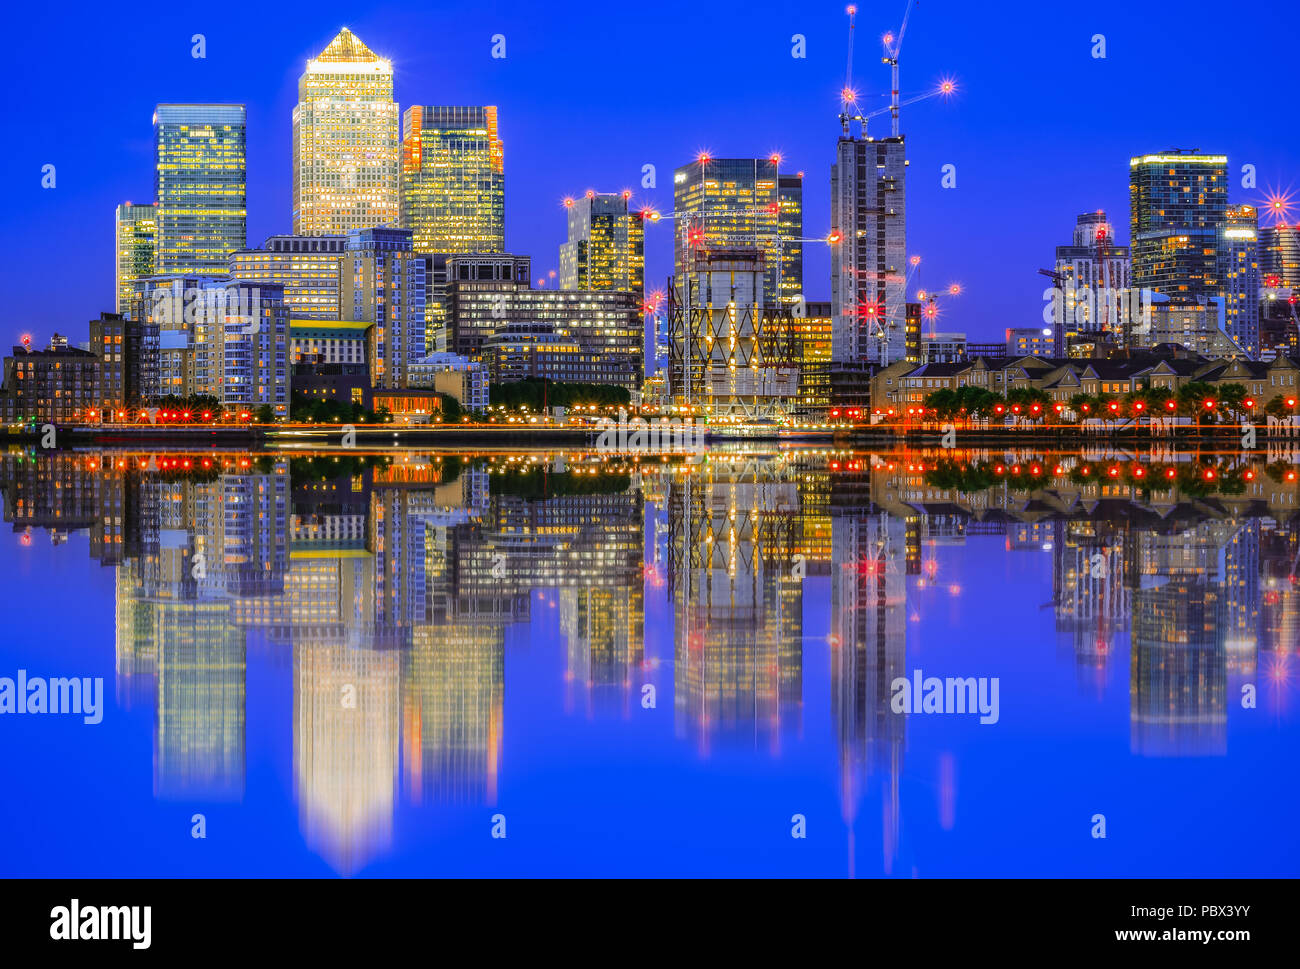 Paesaggio urbano illuminato a Canary Wharf e la sua riflessione dal fiume Tamigi, un quartiere principale degli affari nella zona est di Londra Foto Stock